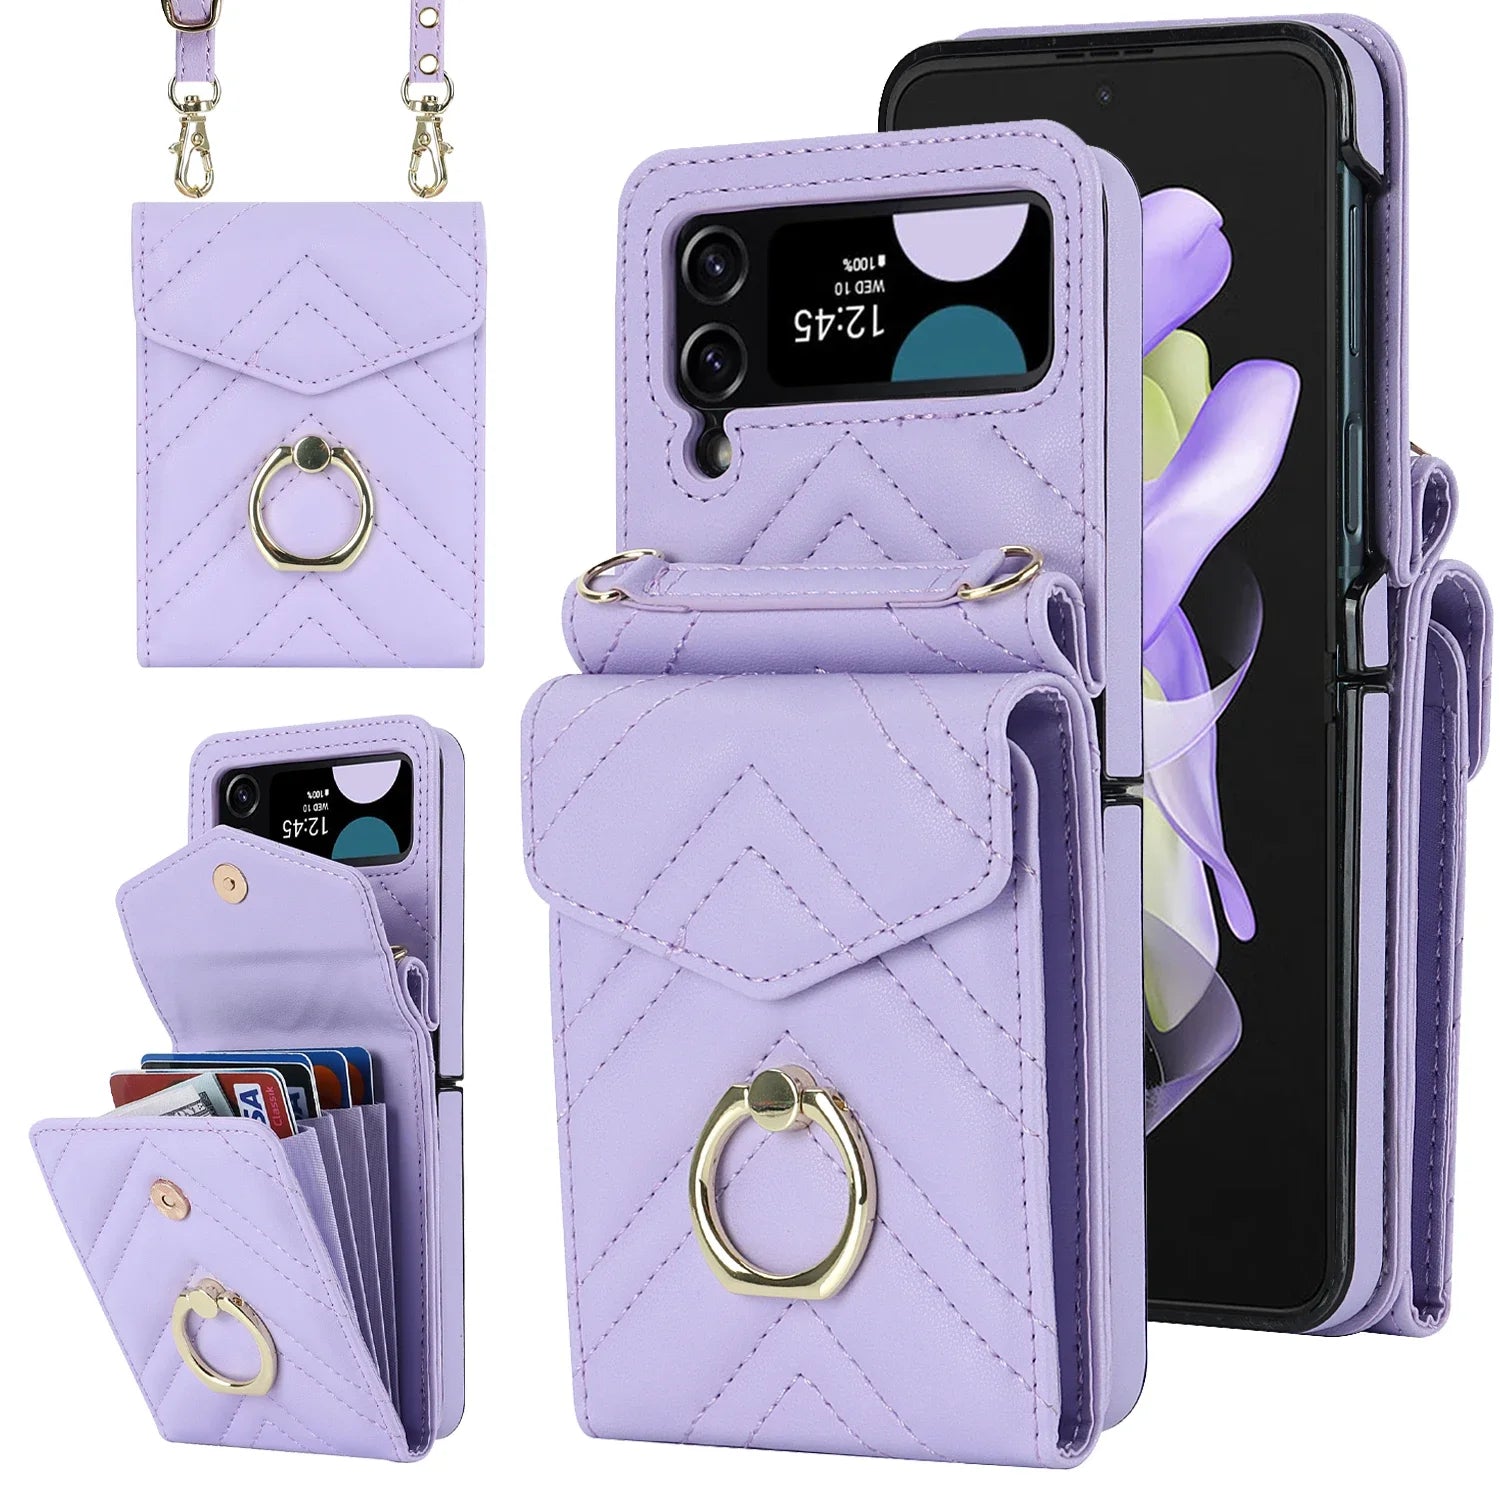 Wallet RFID Card Slot Leather Galaxy Z Flip Case - DealJustDeal